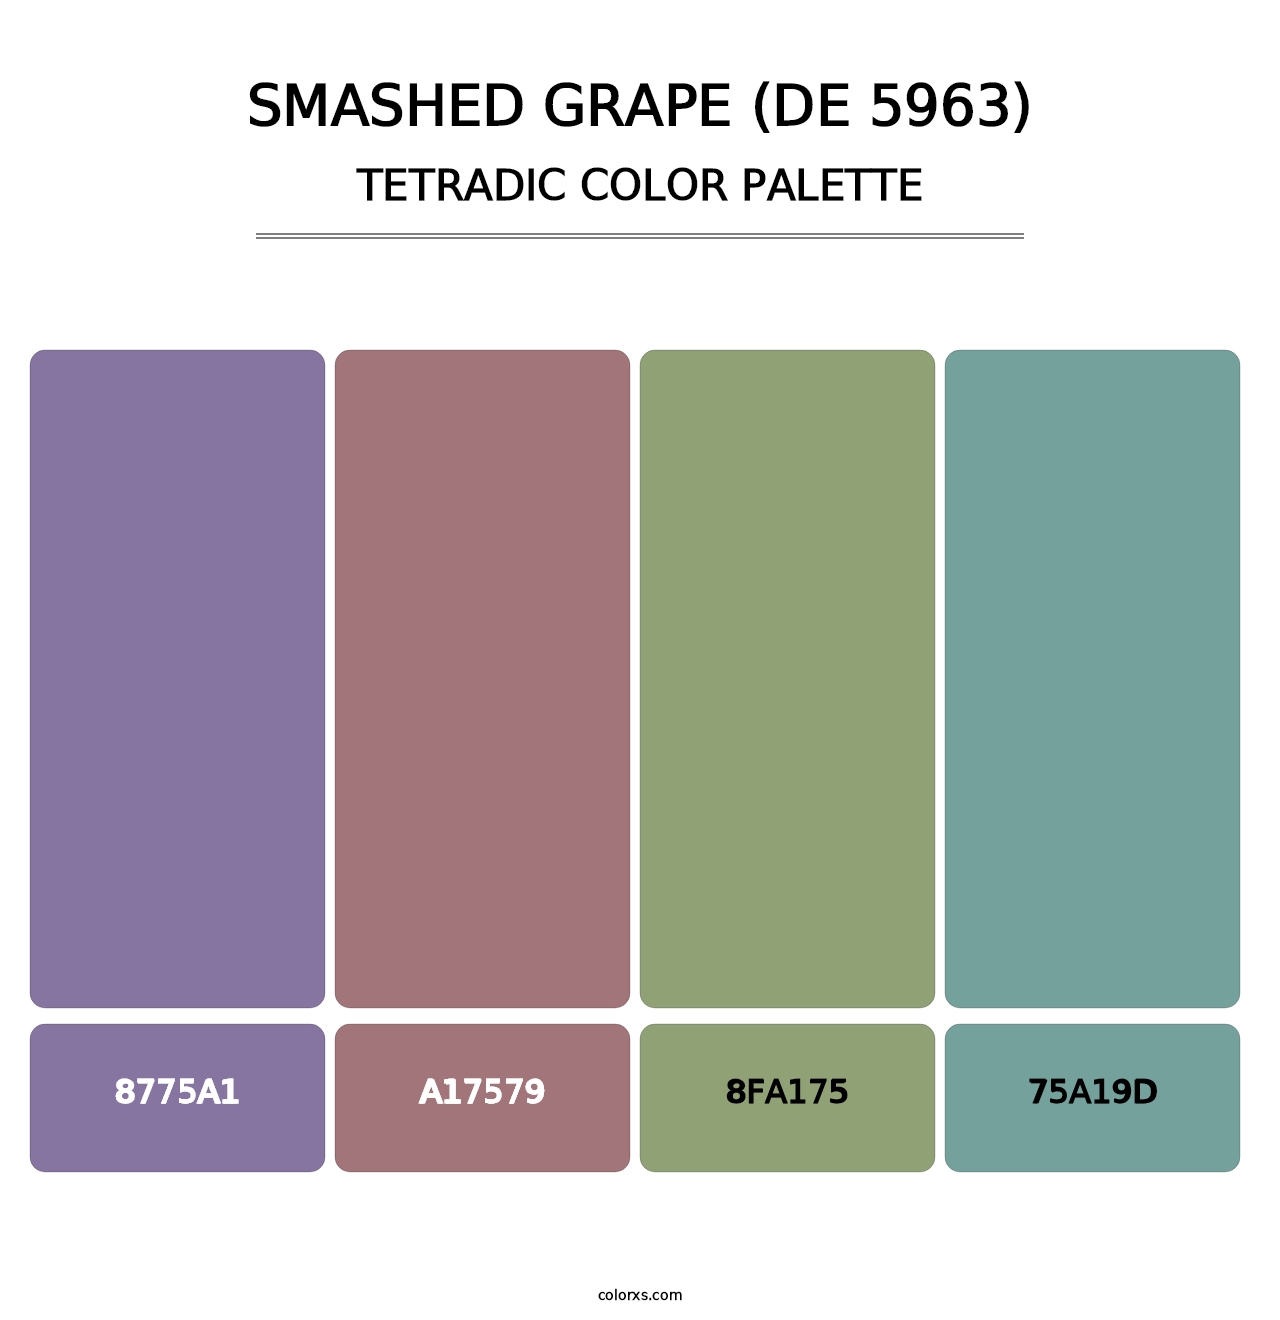 Smashed Grape (DE 5963) - Tetradic Color Palette